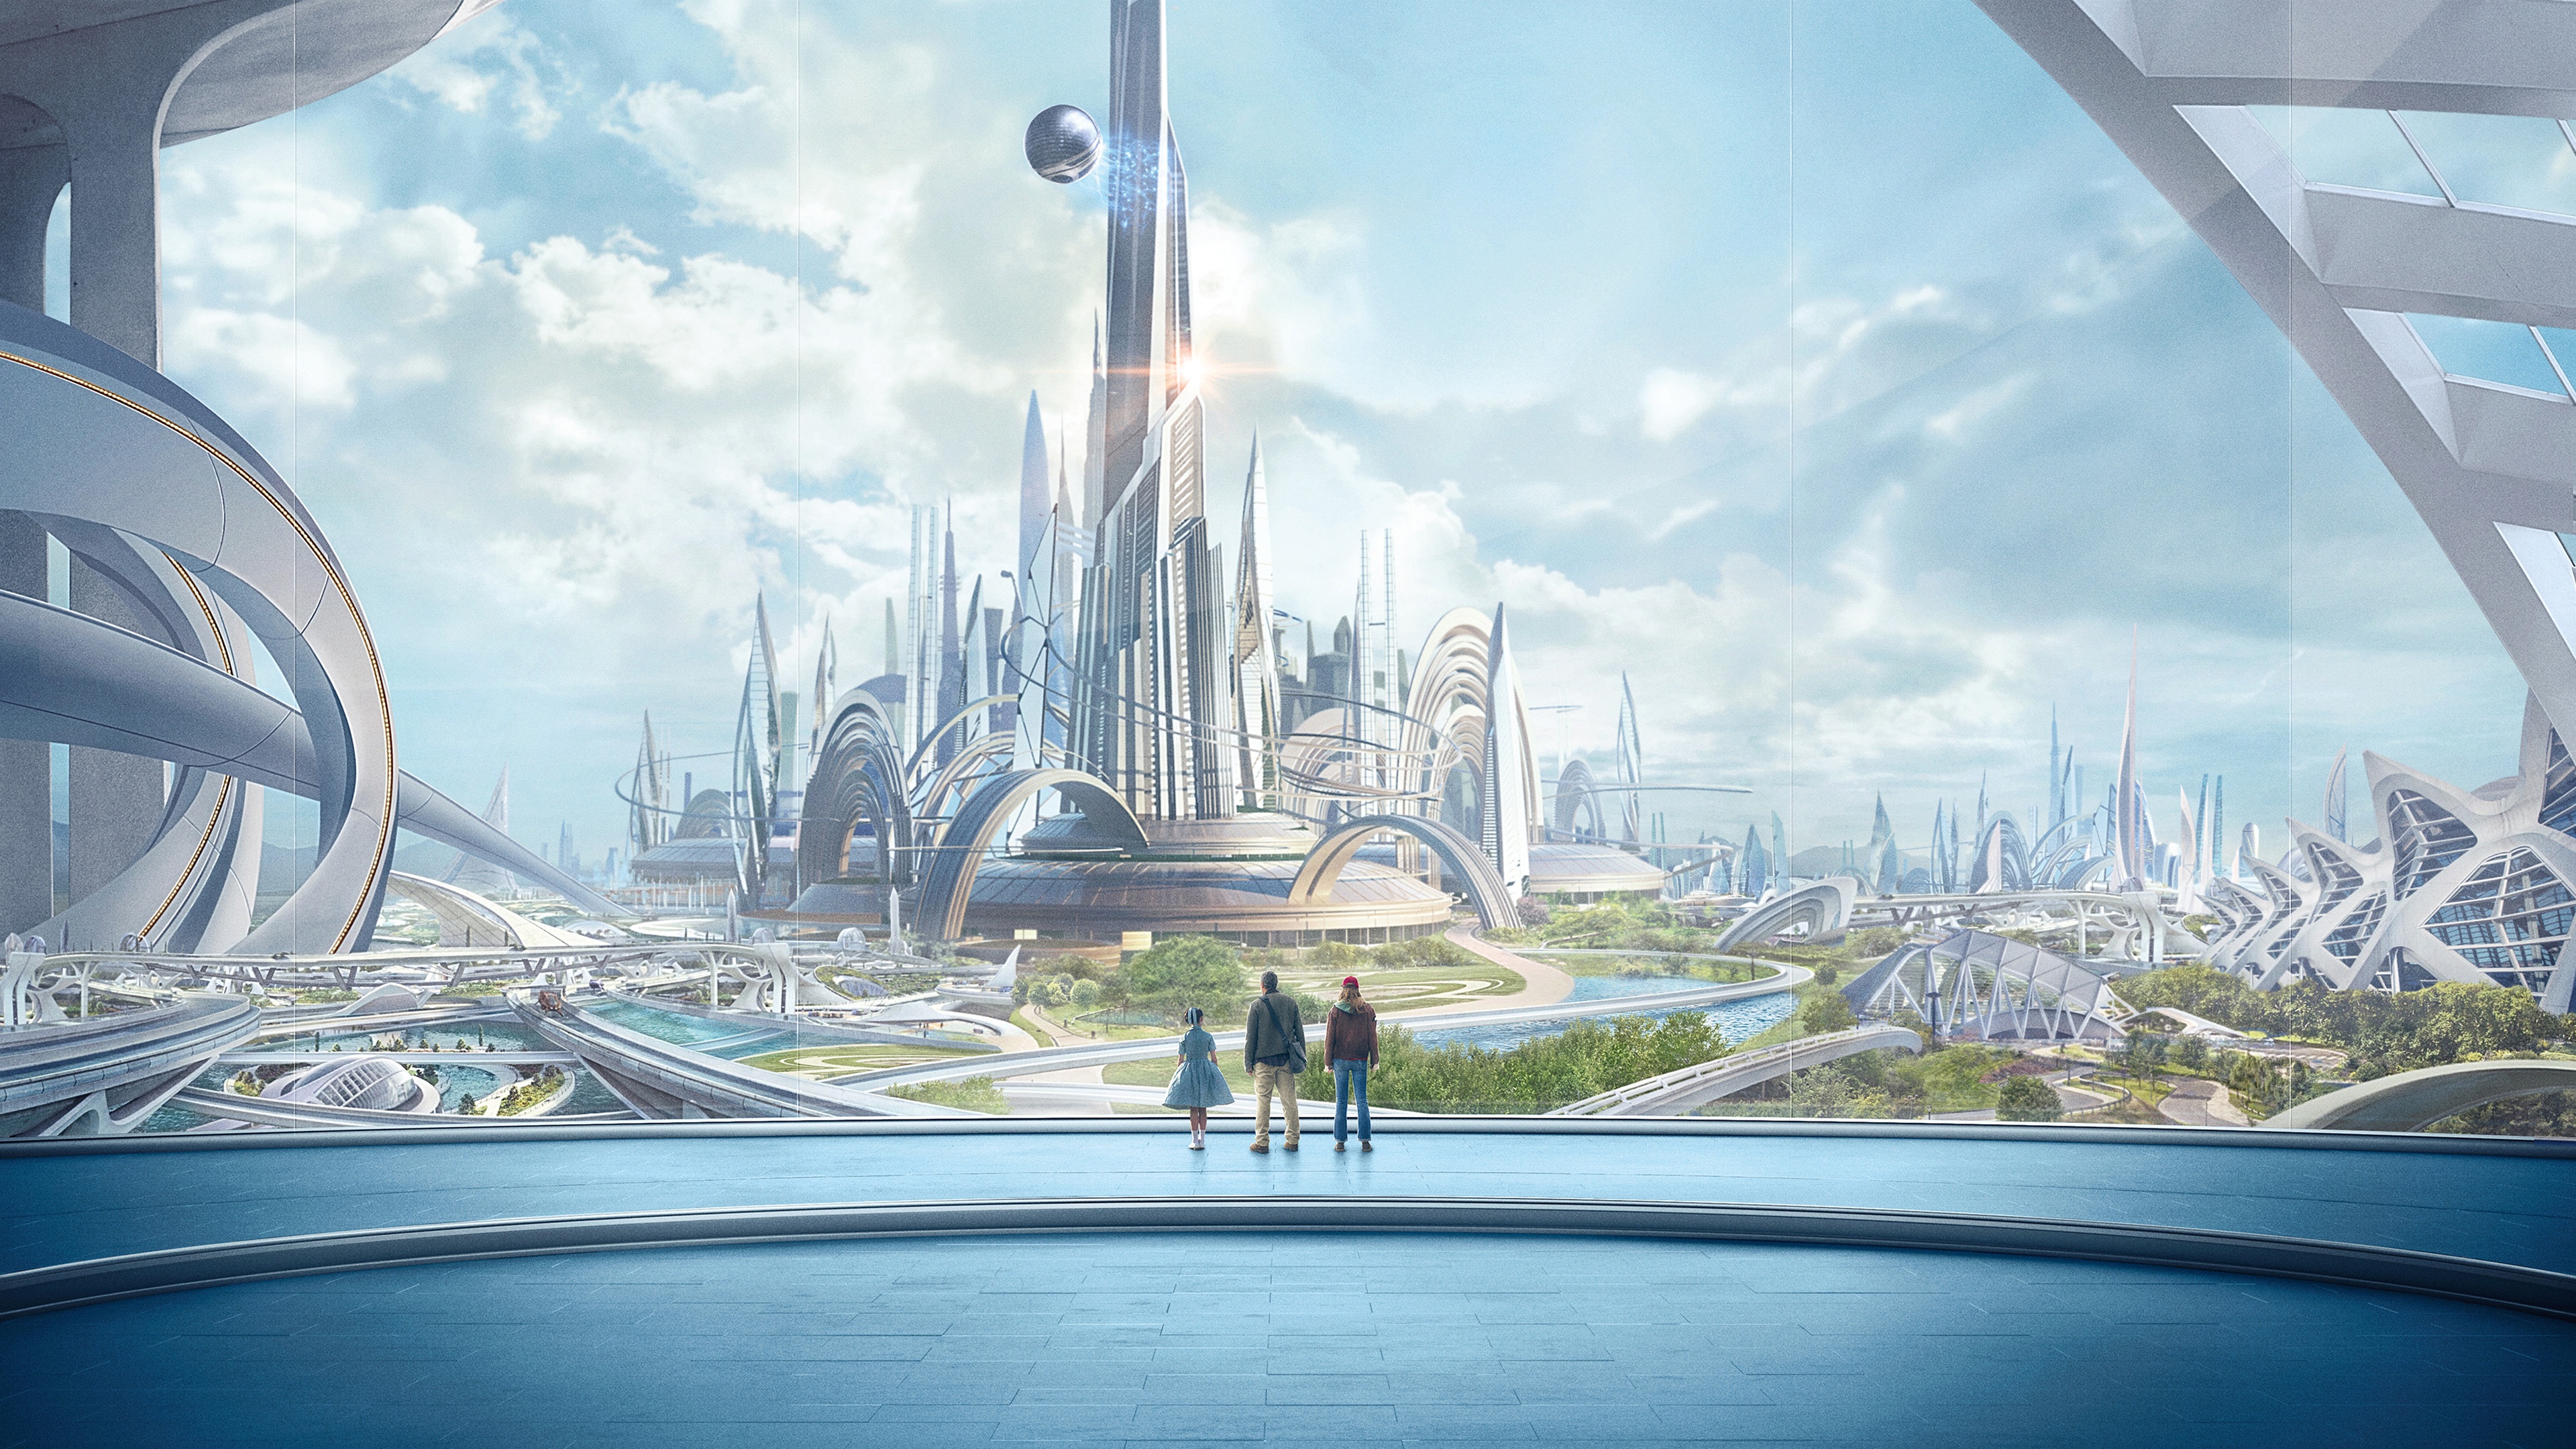 Descargar fondos de escritorio de Tomorrowland: El Mundo Del Mañana HD